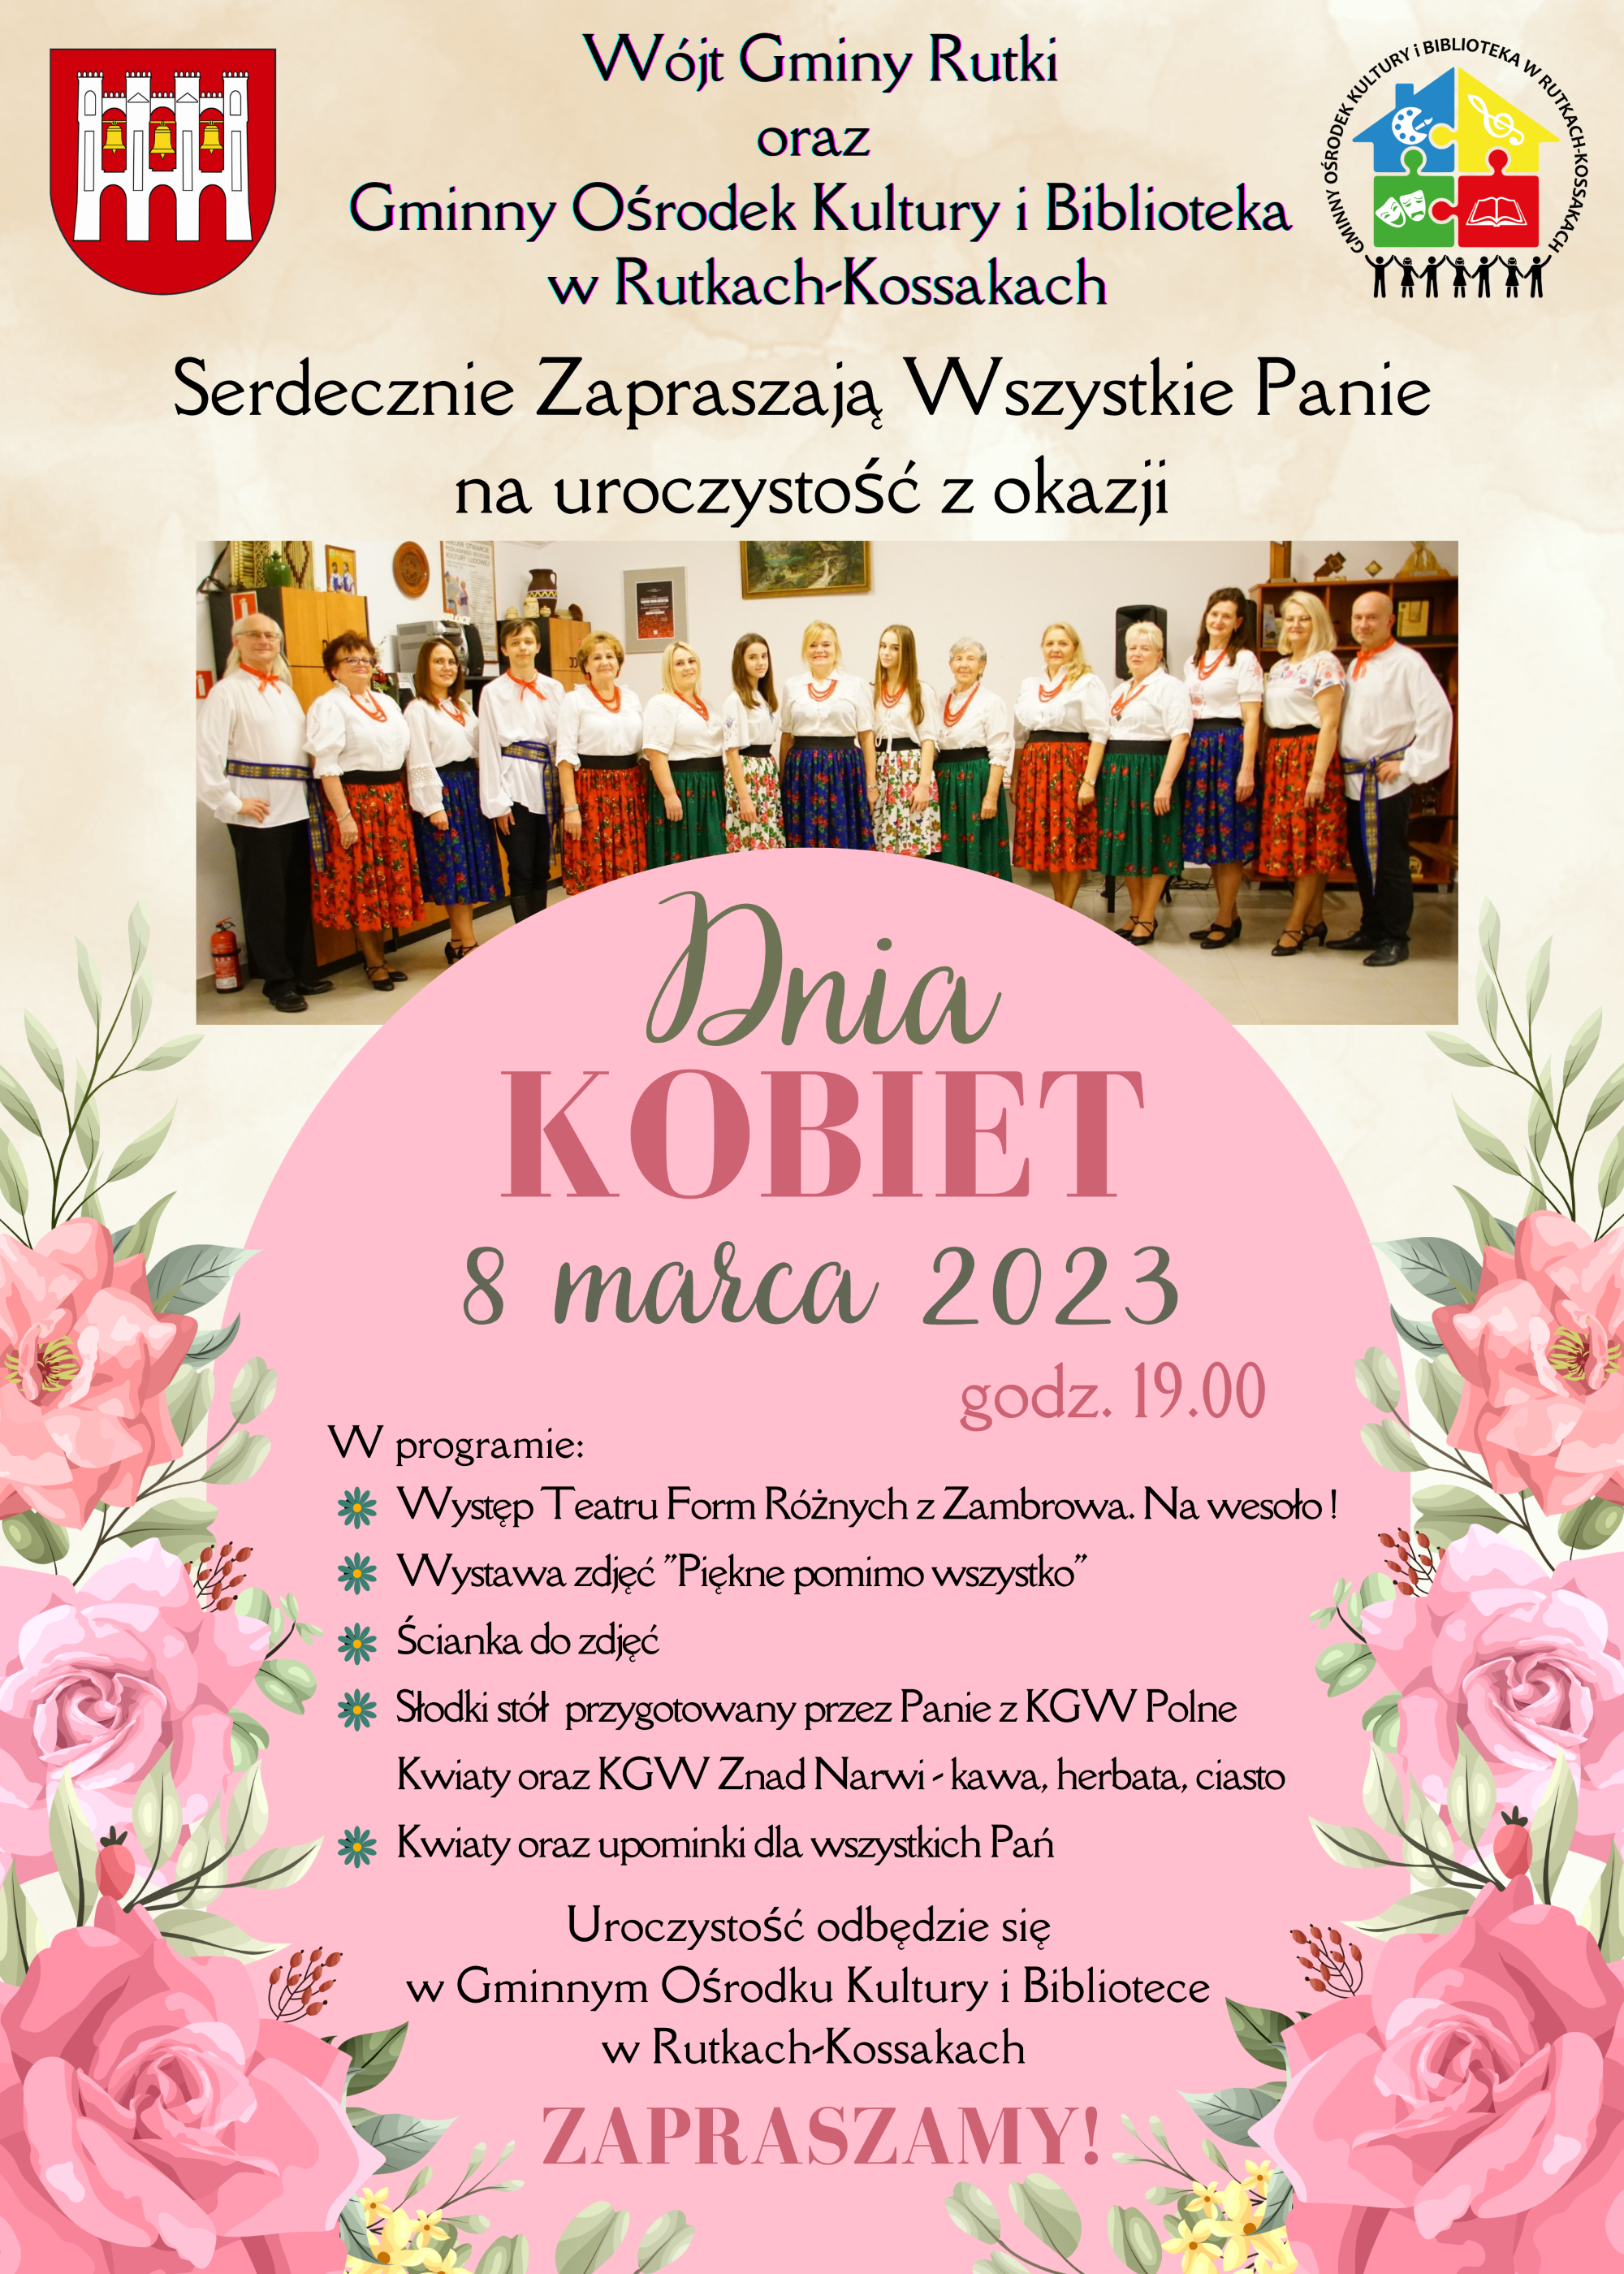 Zbliża się Dzień Kobiet, z tej okazji zapraszamy Was serdecznie 8 marca 2023 r. do Gminnego Ośrodka Kultury i Biblioteki w Rutkach-Kossakach na wspólne świętowanie o godzinie 19.00